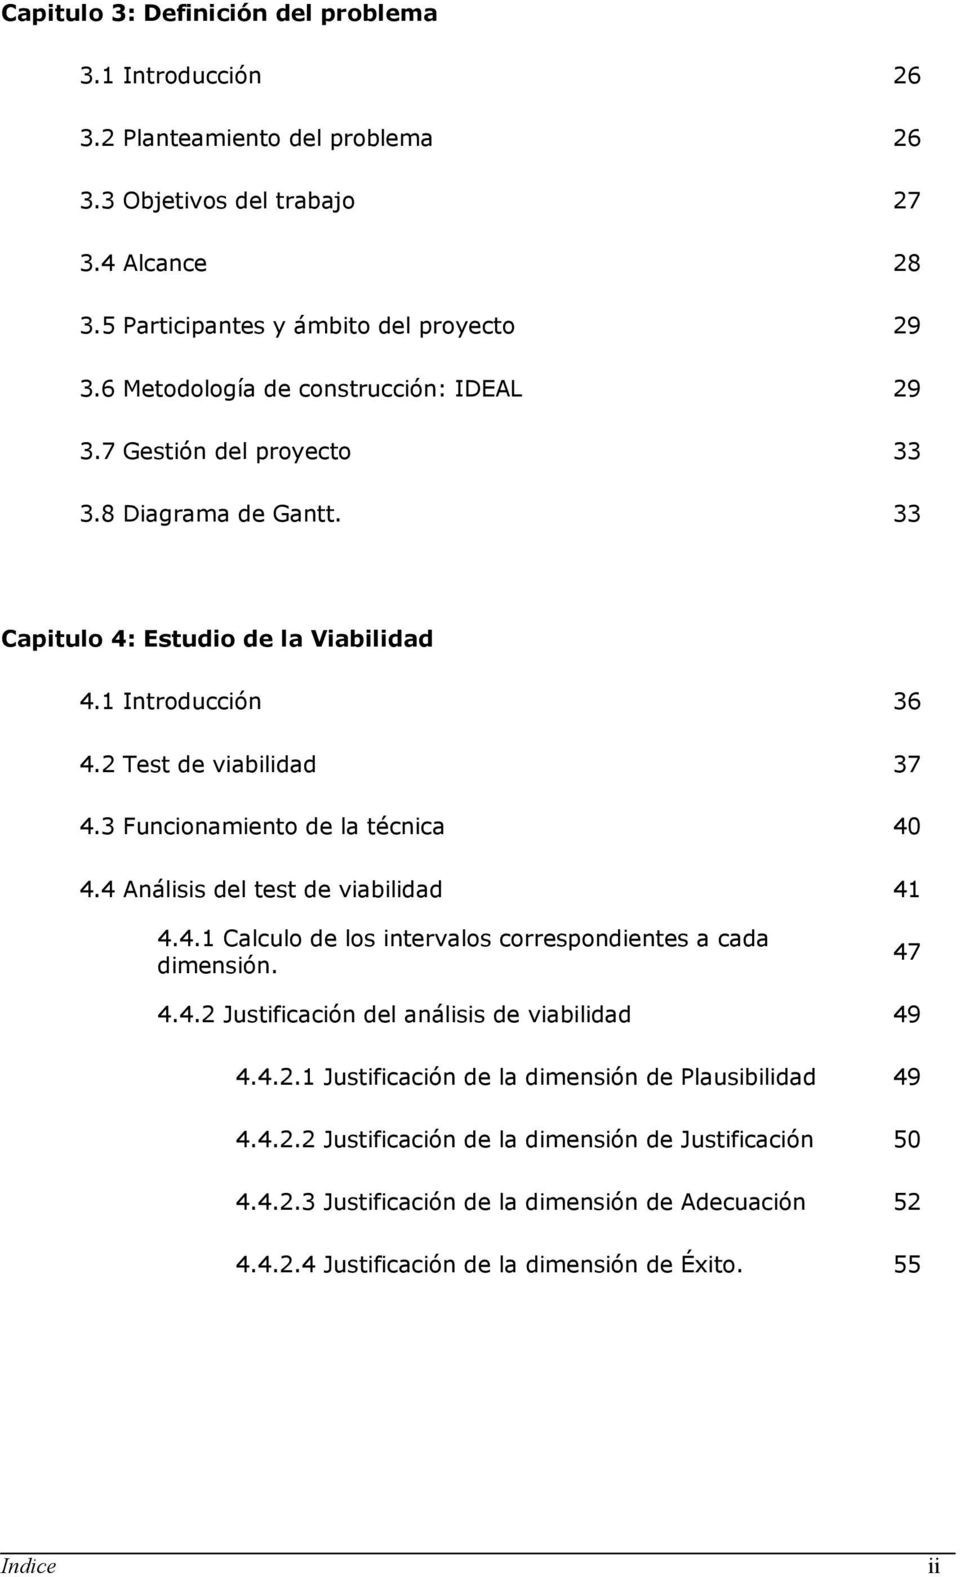 3 Funcionamiento de la técnica 40 4.4 Análisis del test de viabilidad 41 4.4.1 Calculo de los intervalos correspondientes a cada dimensión. 47 4.4.2 Justificación del análisis de viabilidad 49 4.